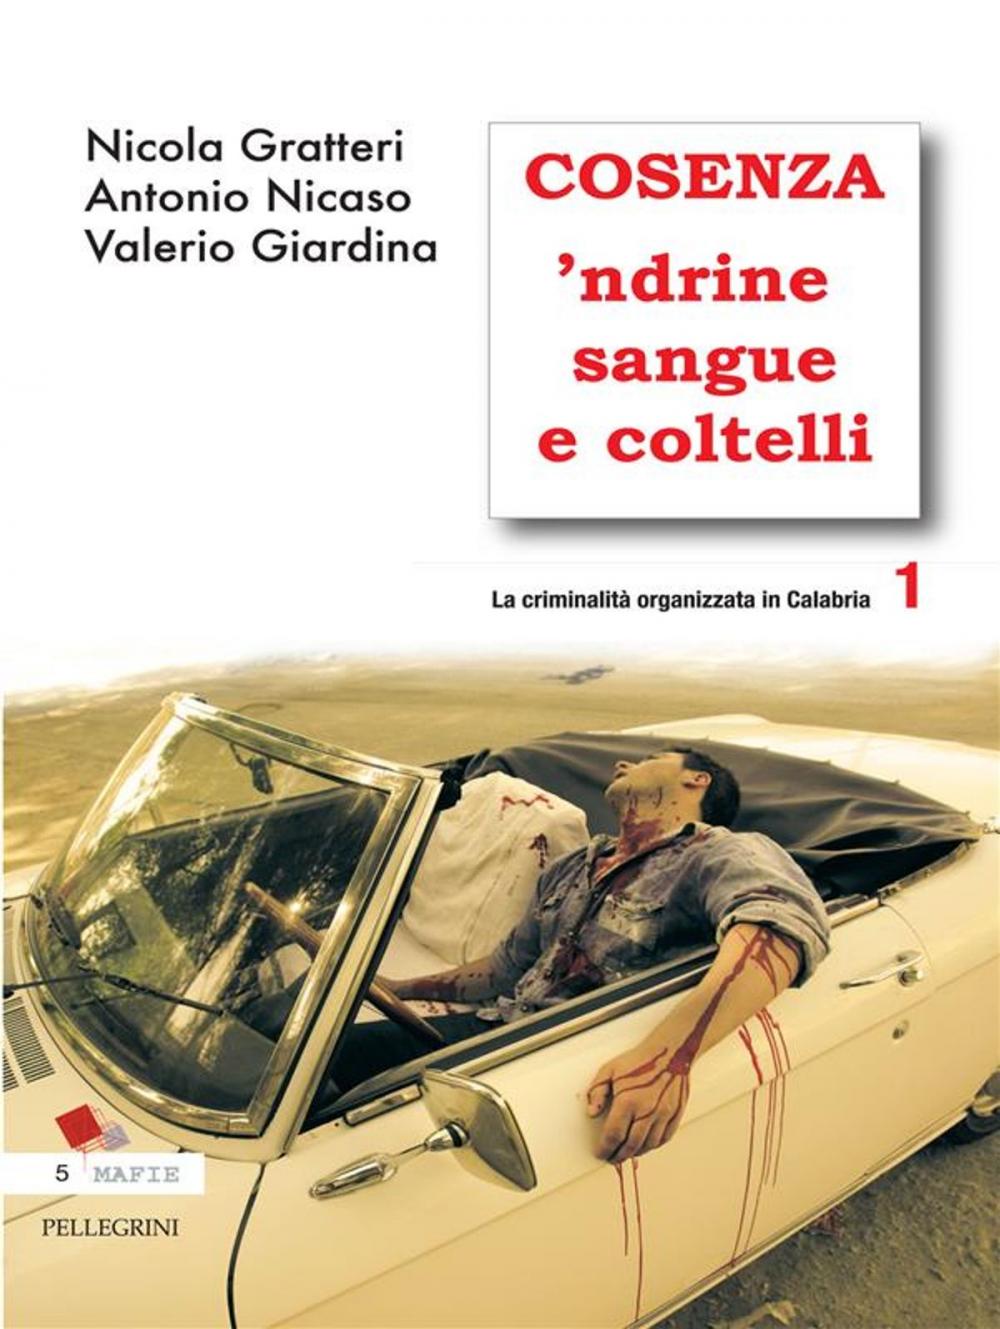 Big bigCover of Cosenza 'Ndrine Sangue e Coltelli. La criminalità organizzata in calabria 1